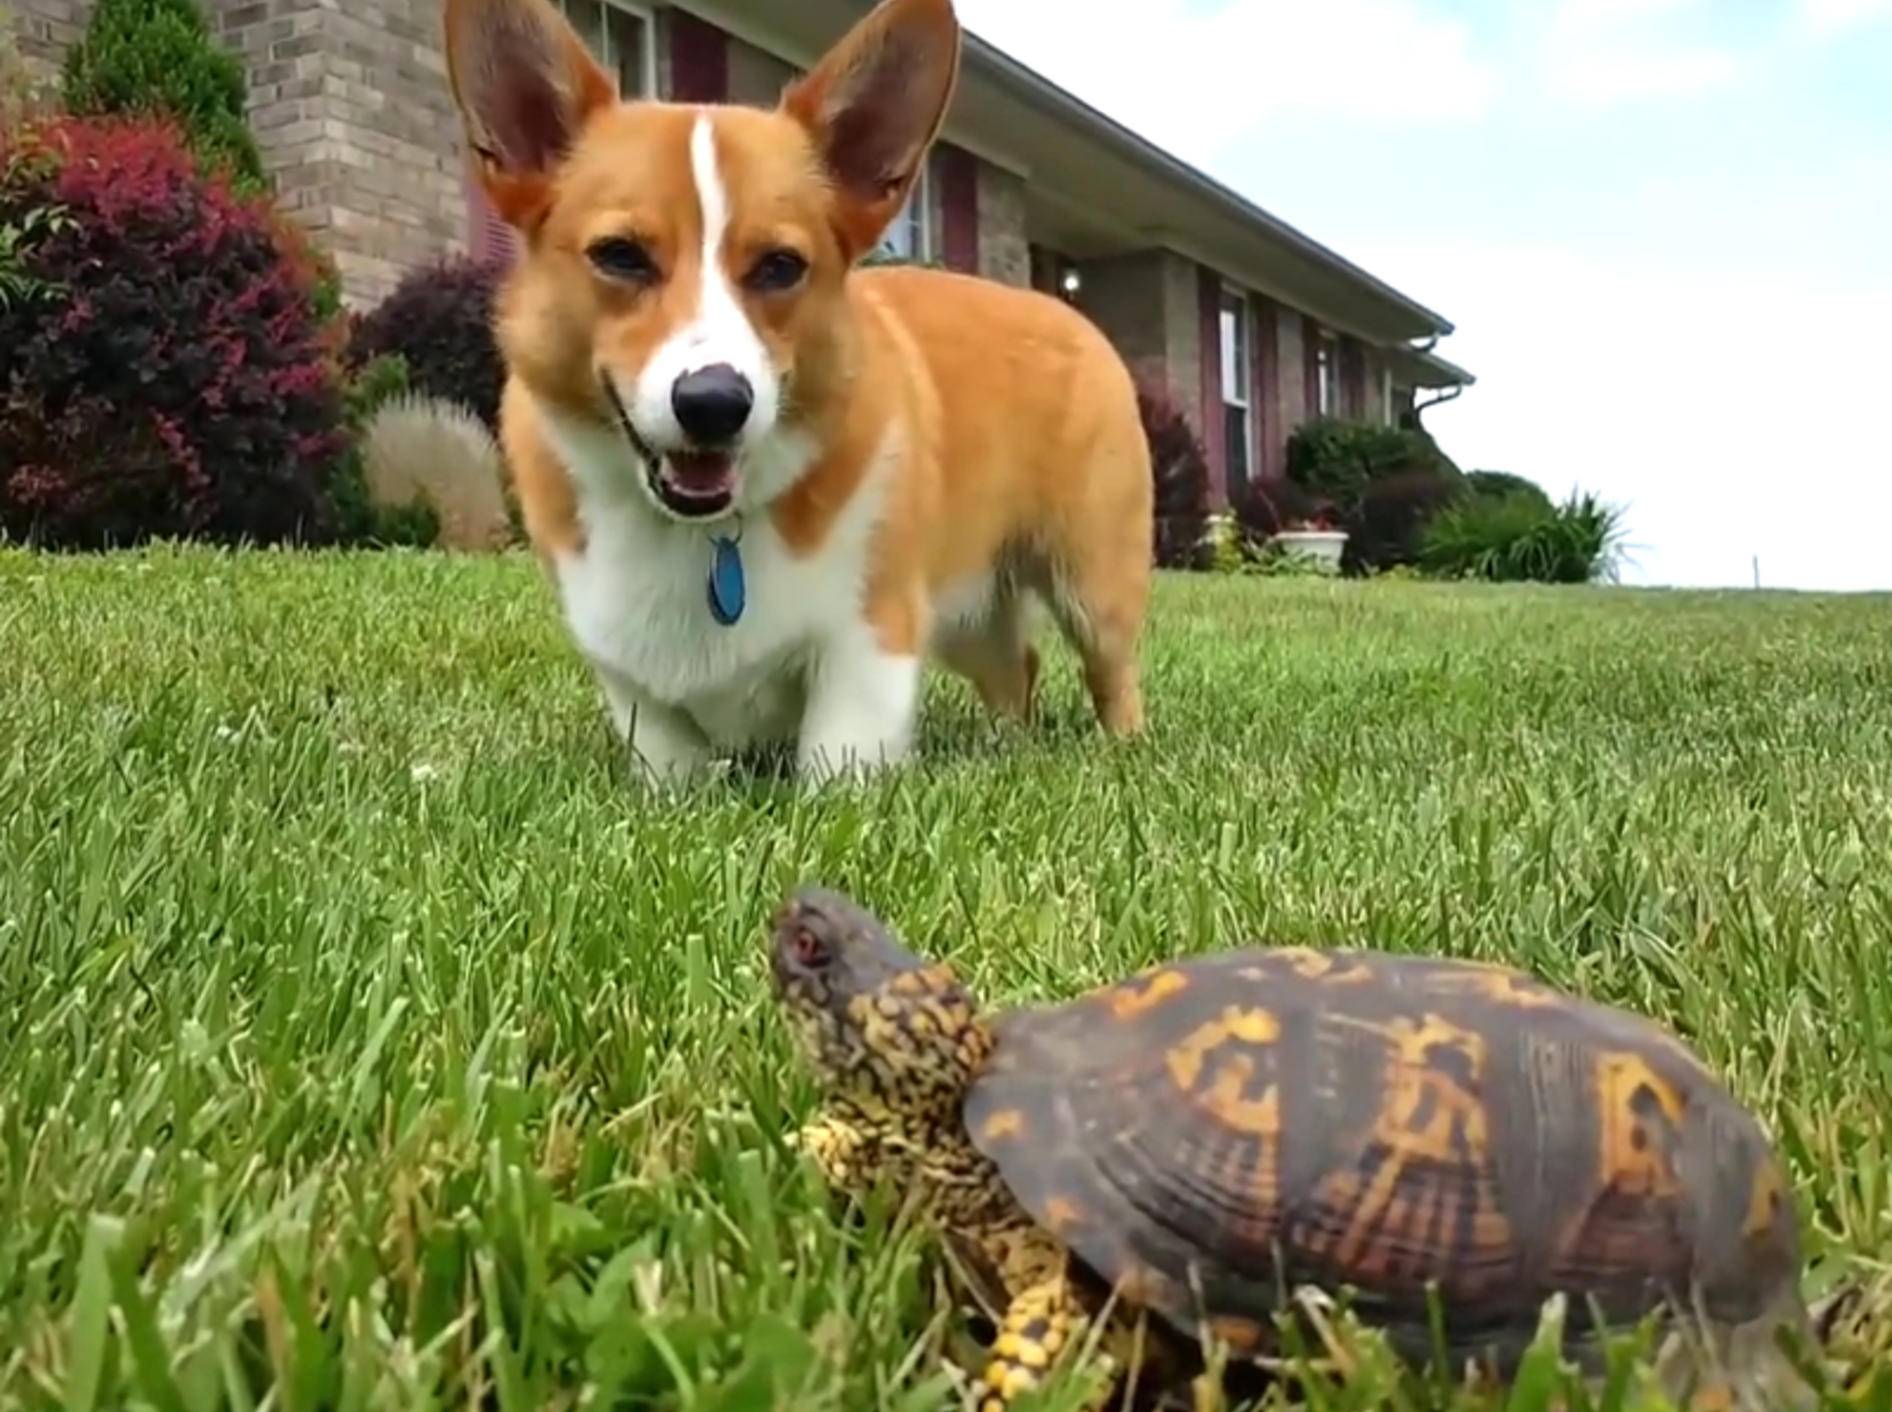 "Hilfe, es lebt!" Corgi erschrickt vor Schildkröte – Bild: YouTube / CutiesNFuzzies